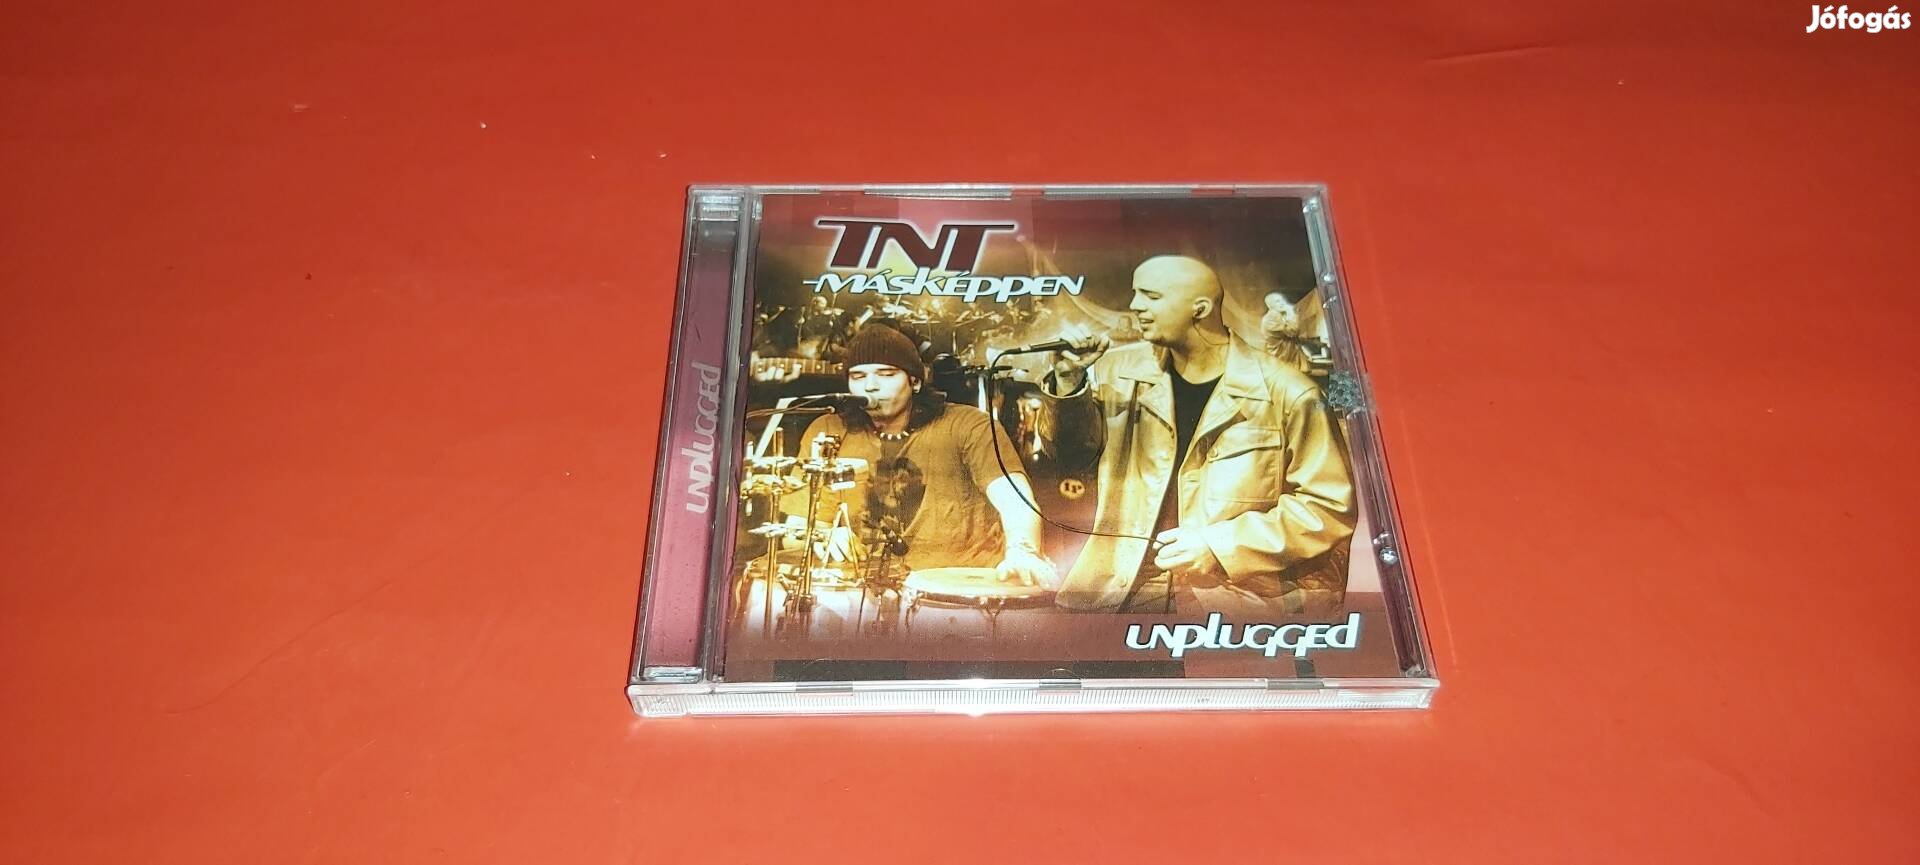 TNT Másképpen/Unplugged Cd 2001